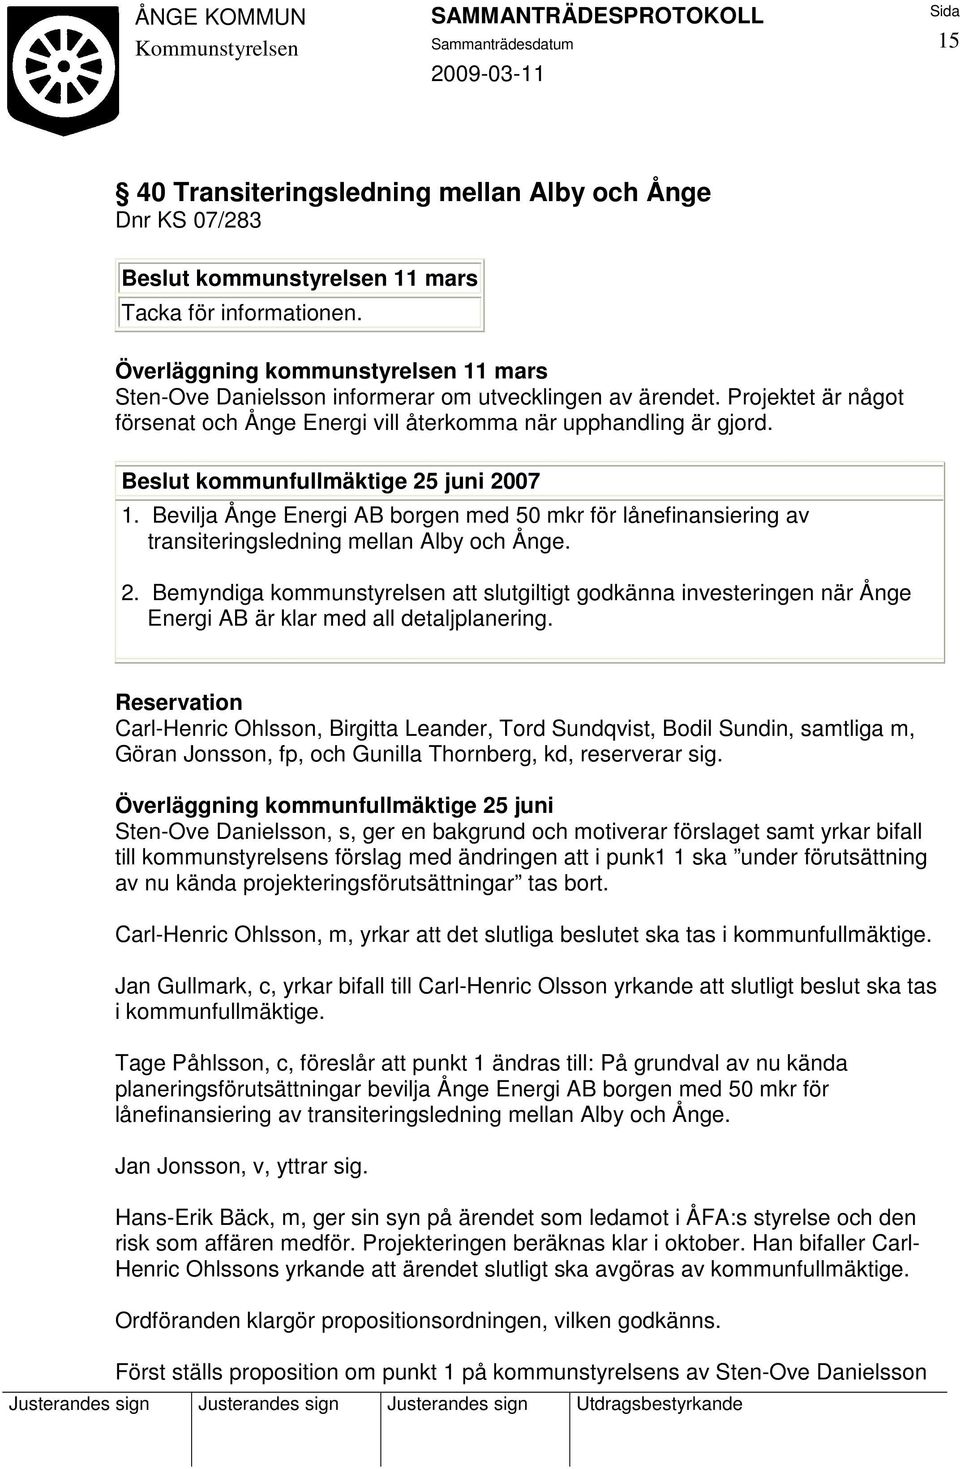 Beslut kommunfullmäktige 25 juni 2007 1. Bevilja Ånge Energi AB borgen med 50 mkr för lånefinansiering av transiteringsledning mellan Alby och Ånge. 2. Bemyndiga kommunstyrelsen att slutgiltigt godkänna investeringen när Ånge Energi AB är klar med all detaljplanering.